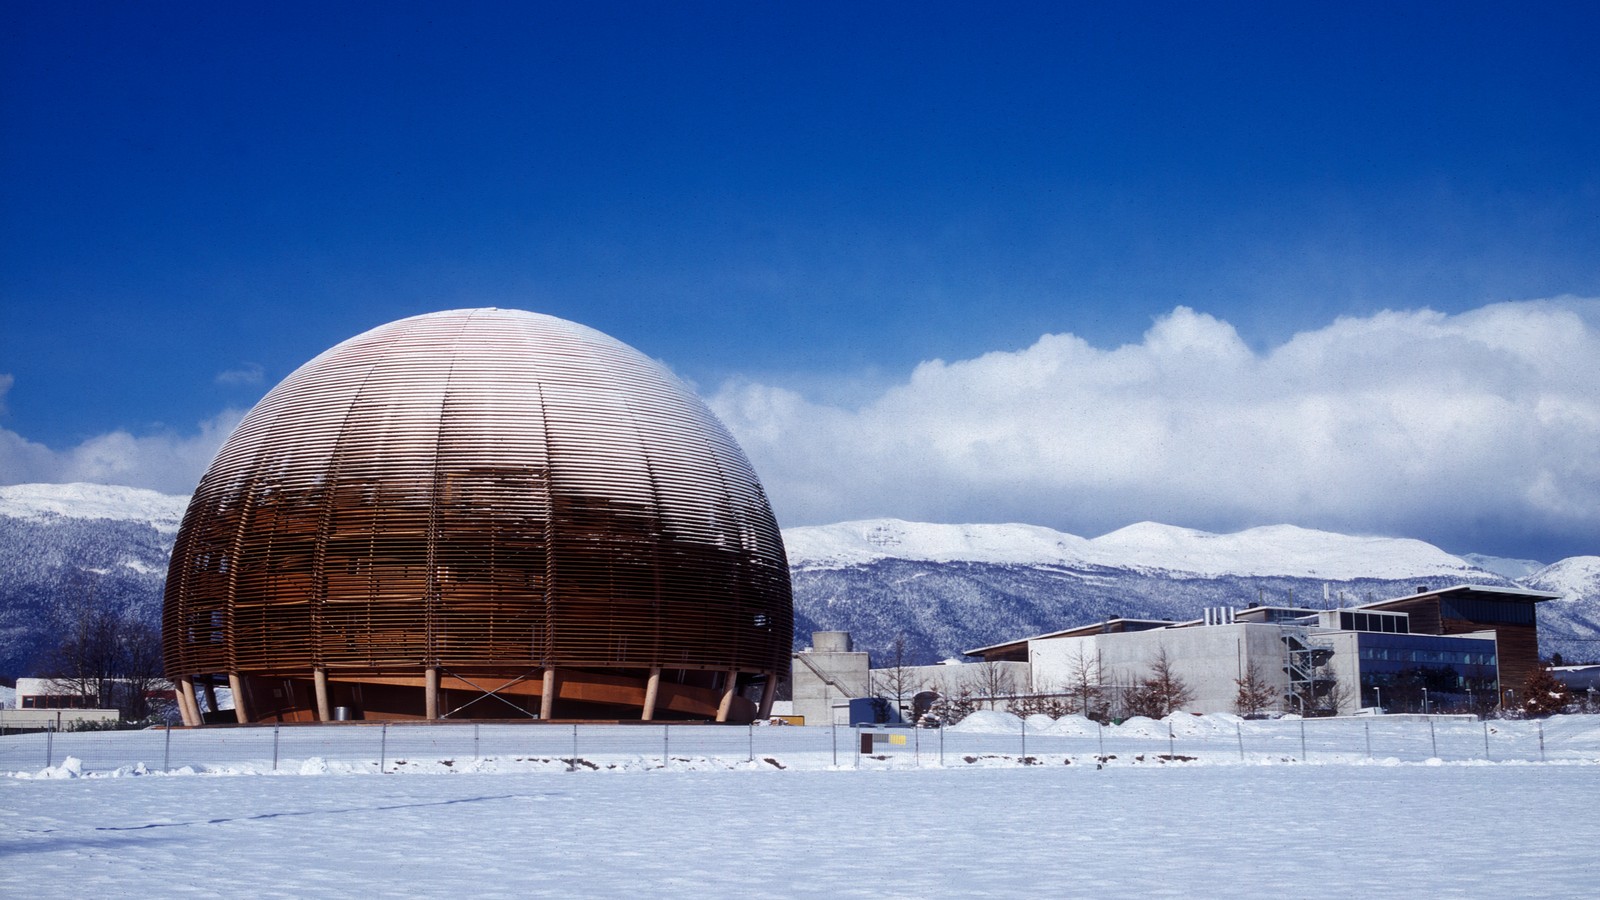 Poziv nastavnicima fizike: istražite čudesni svijet elementarnih čestica i nuklearne fizike u CERN-u!